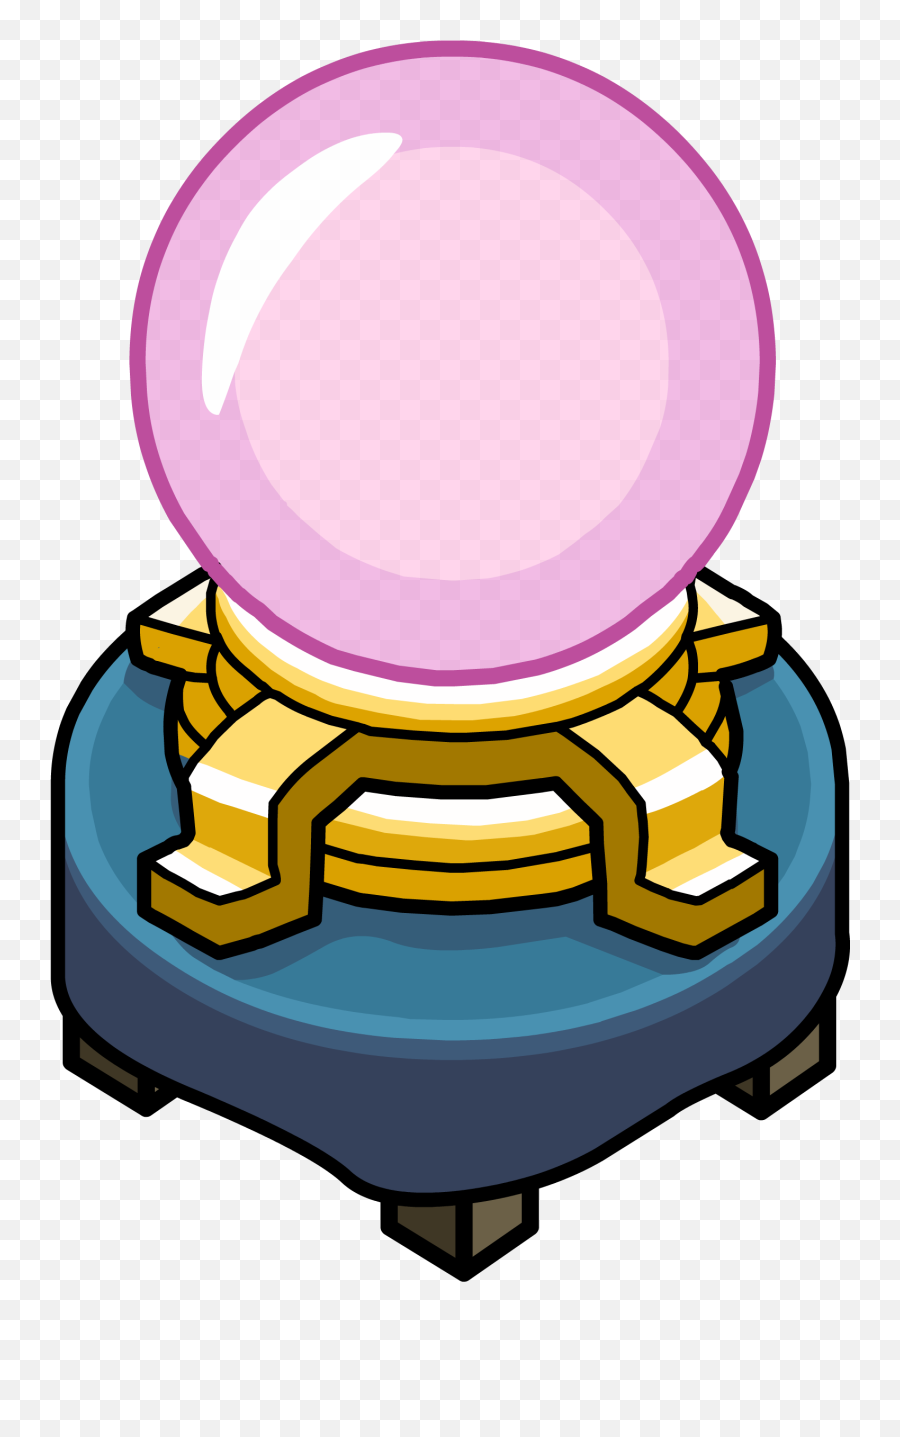 Magic Crystal Ball - Cartoon Transparent Crystal Ball Emoji,Crystal Ball Emoji Transparent